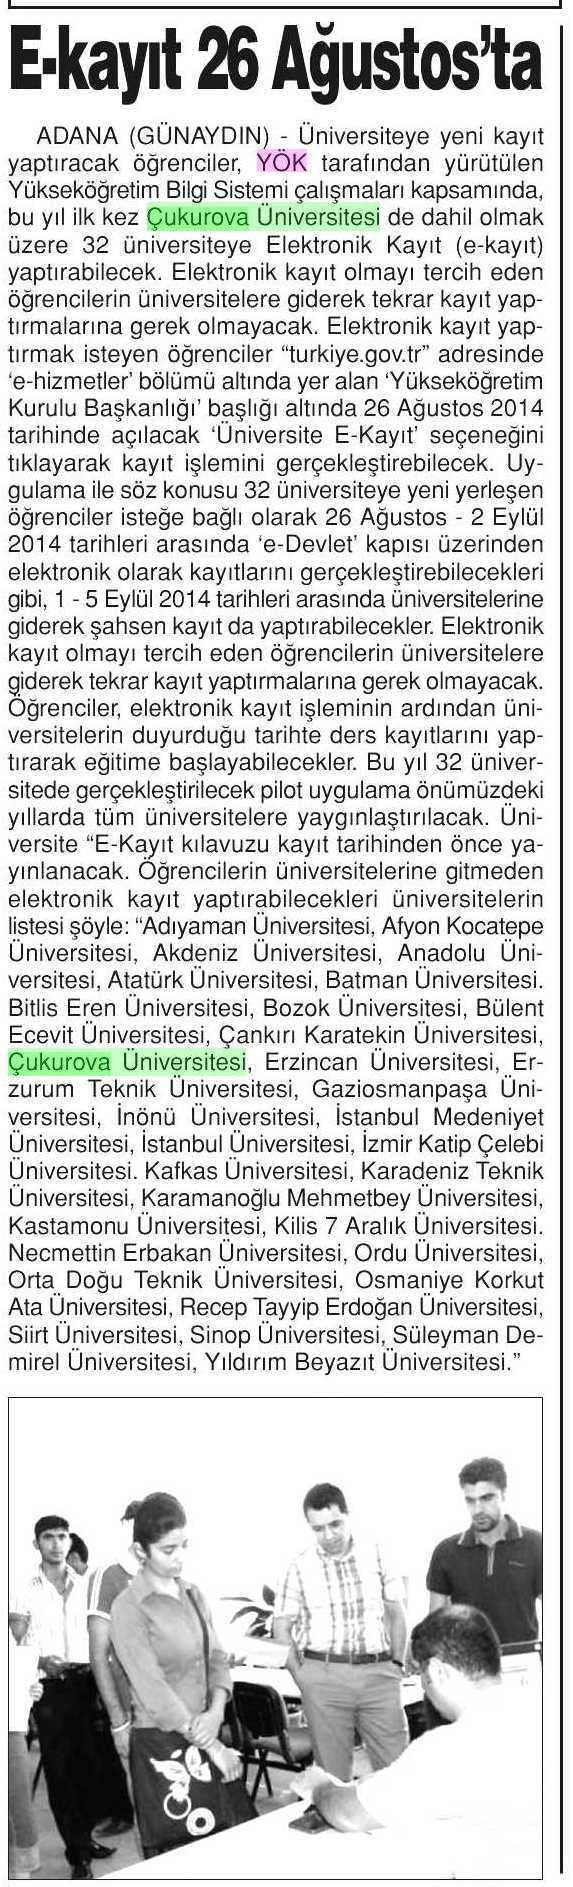 E-KAYIT 26 AGUSTOSLA Yayın Adı : Adana Günaydın Sayfa